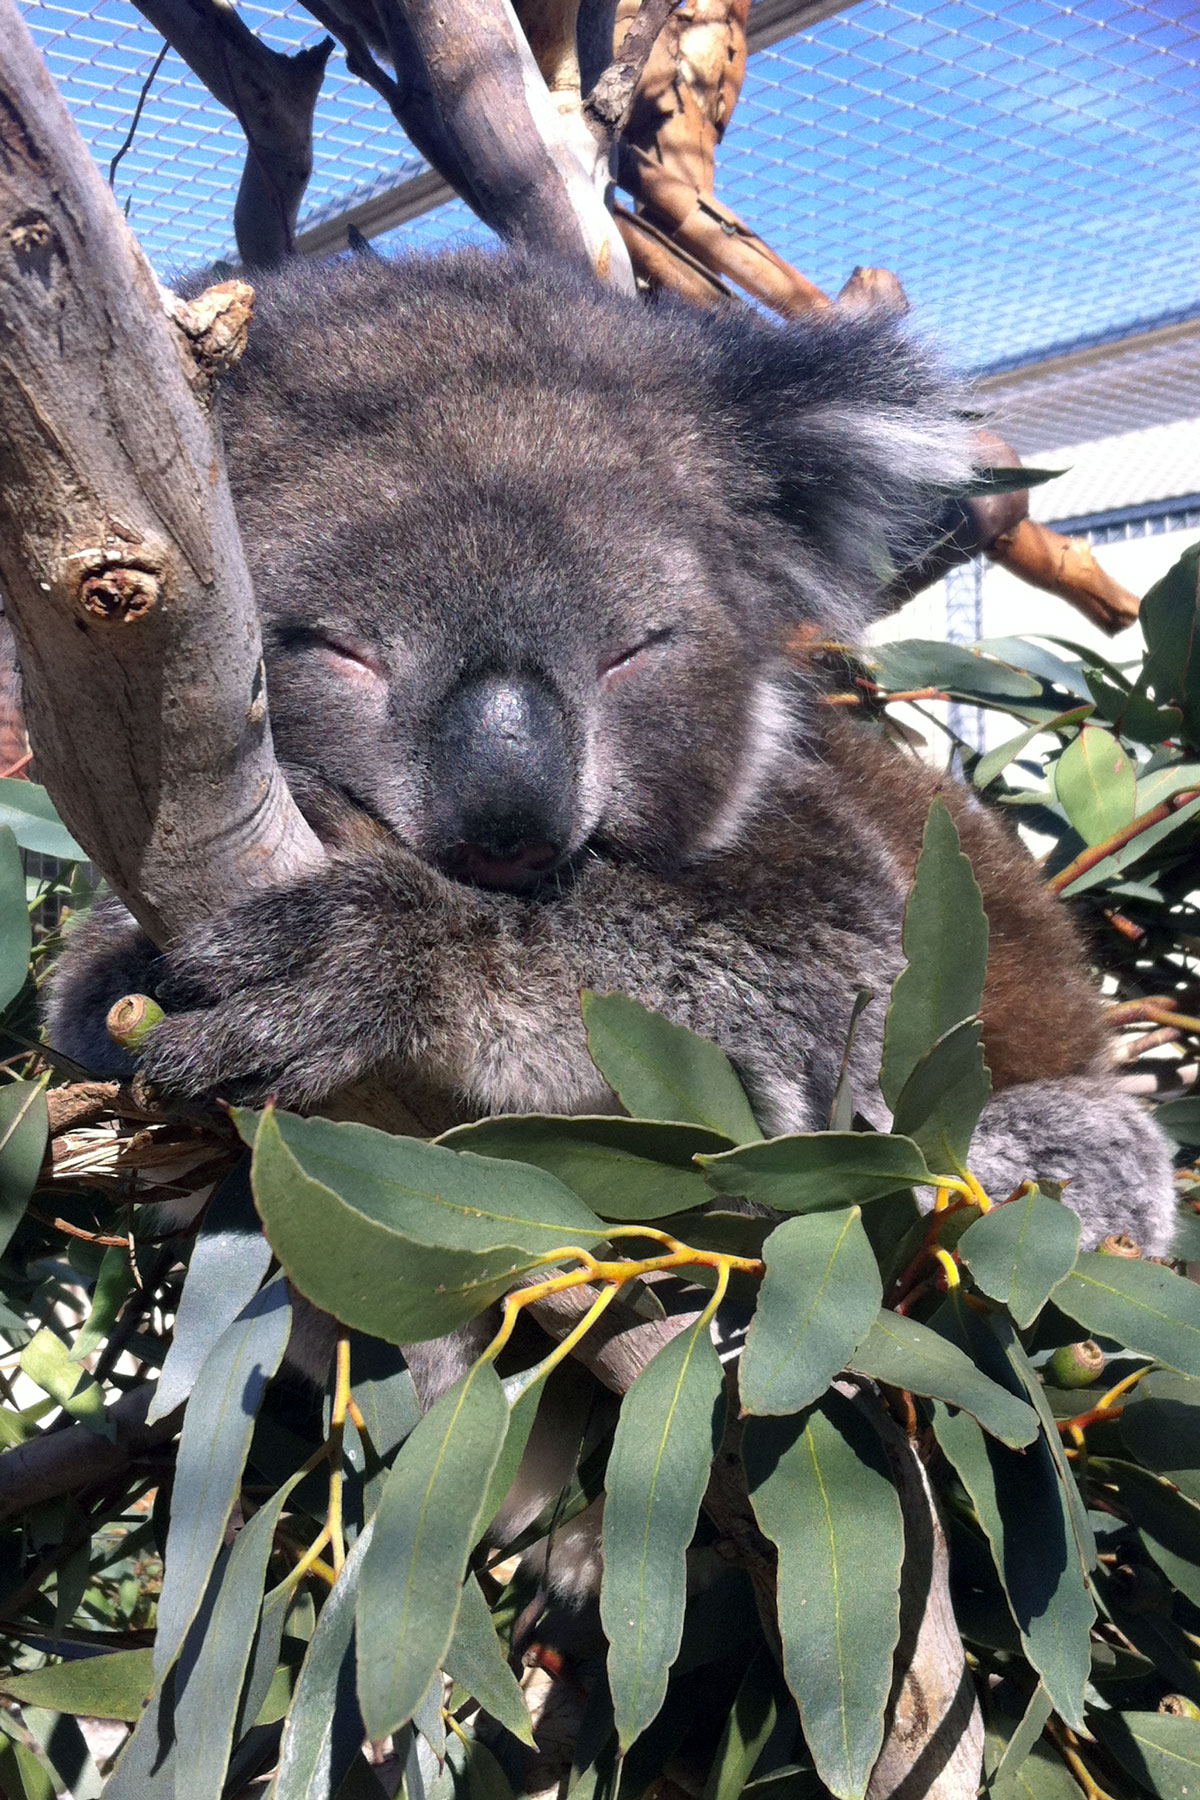 Wayne the Koala